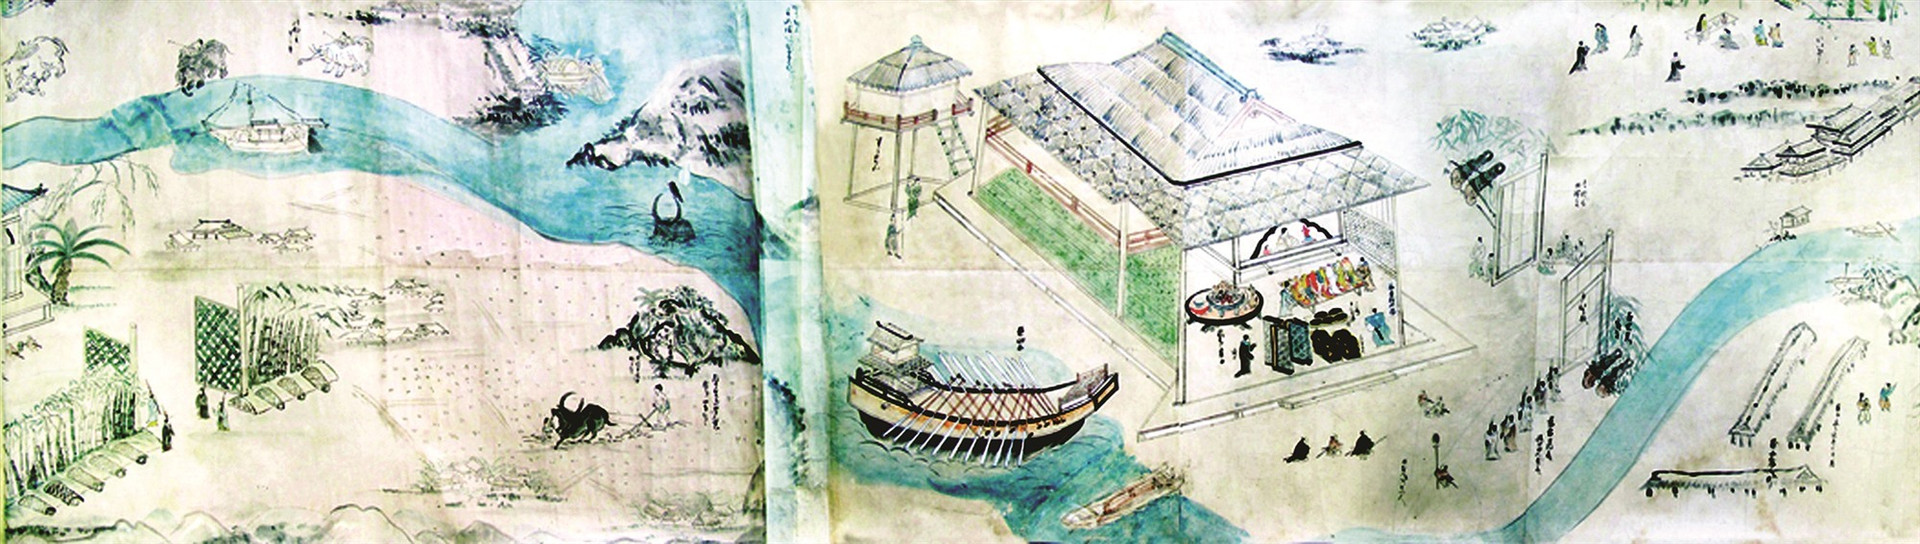 Bức họa đồ mô tả Dinh trấn Thanh Chiêm xưa. Ảnh Internet (V.L)